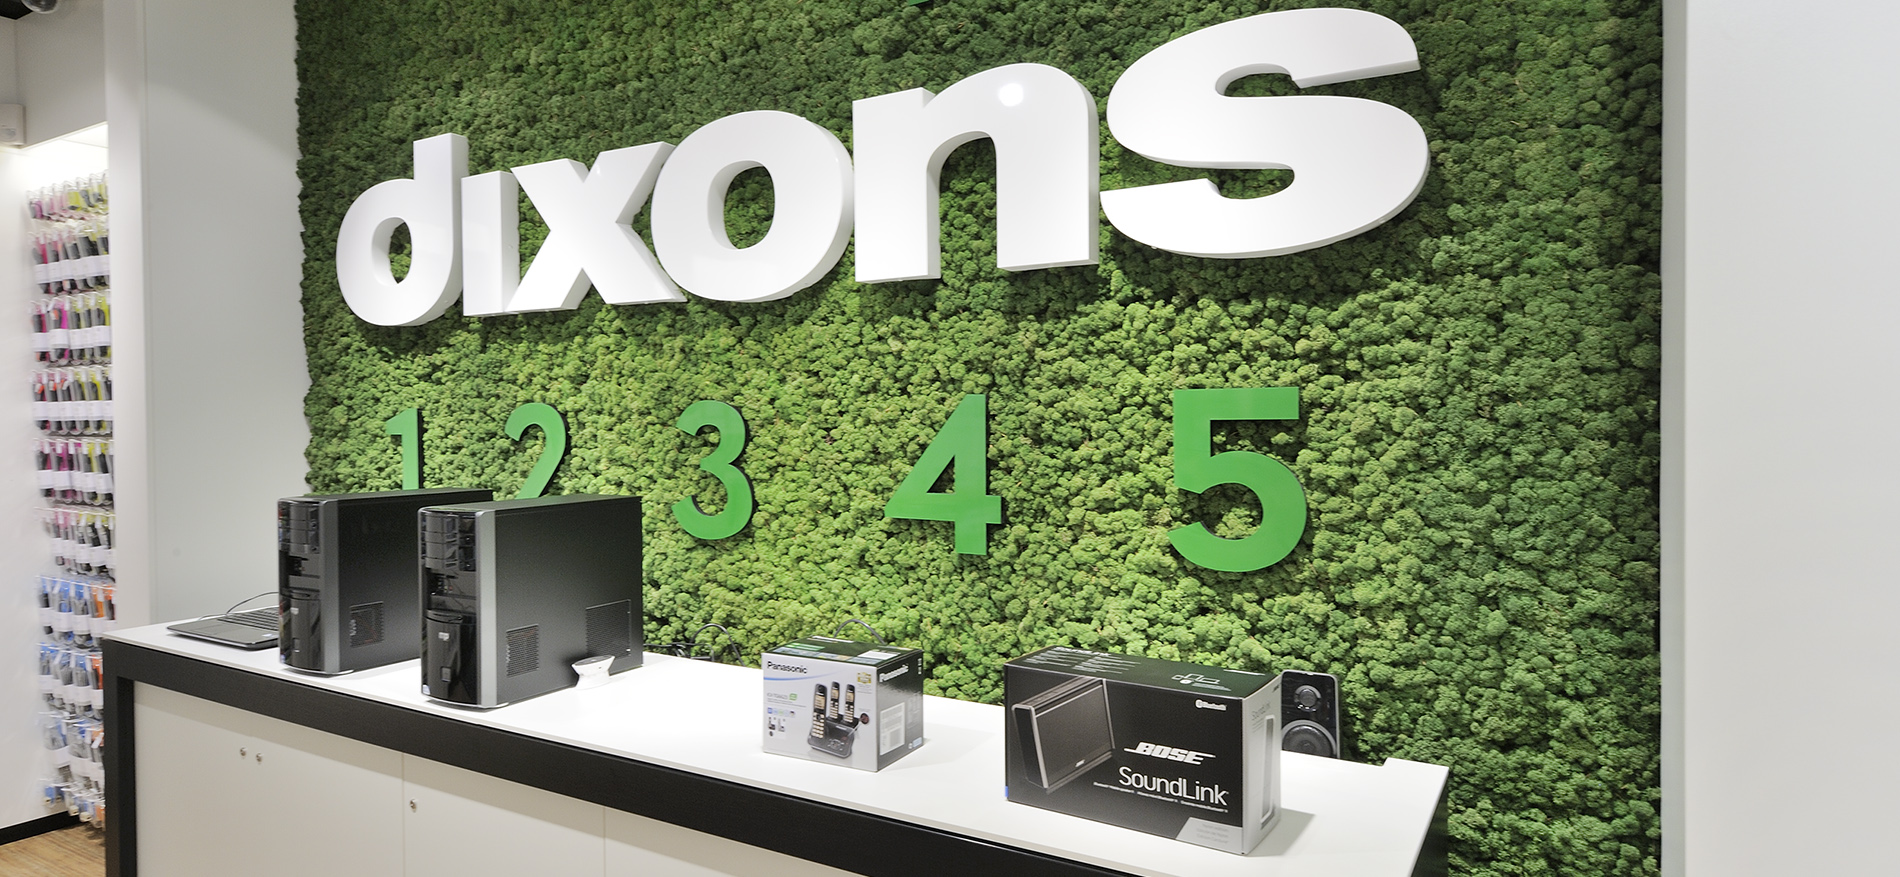 Retail design Dixons 3.0 door WSB Interieurbouw - 